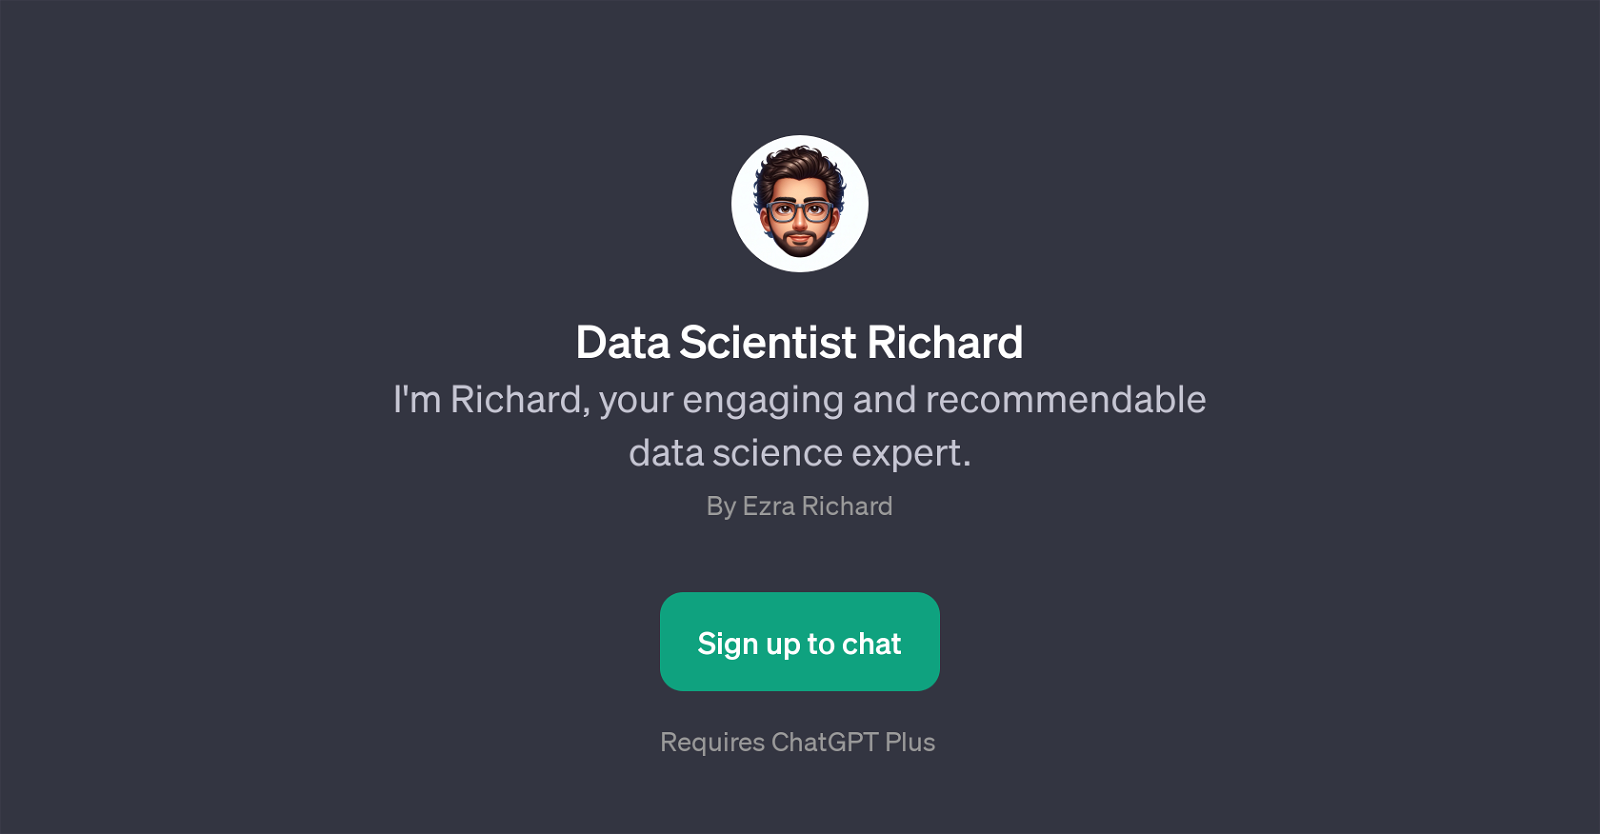 Data Scientist Richard website